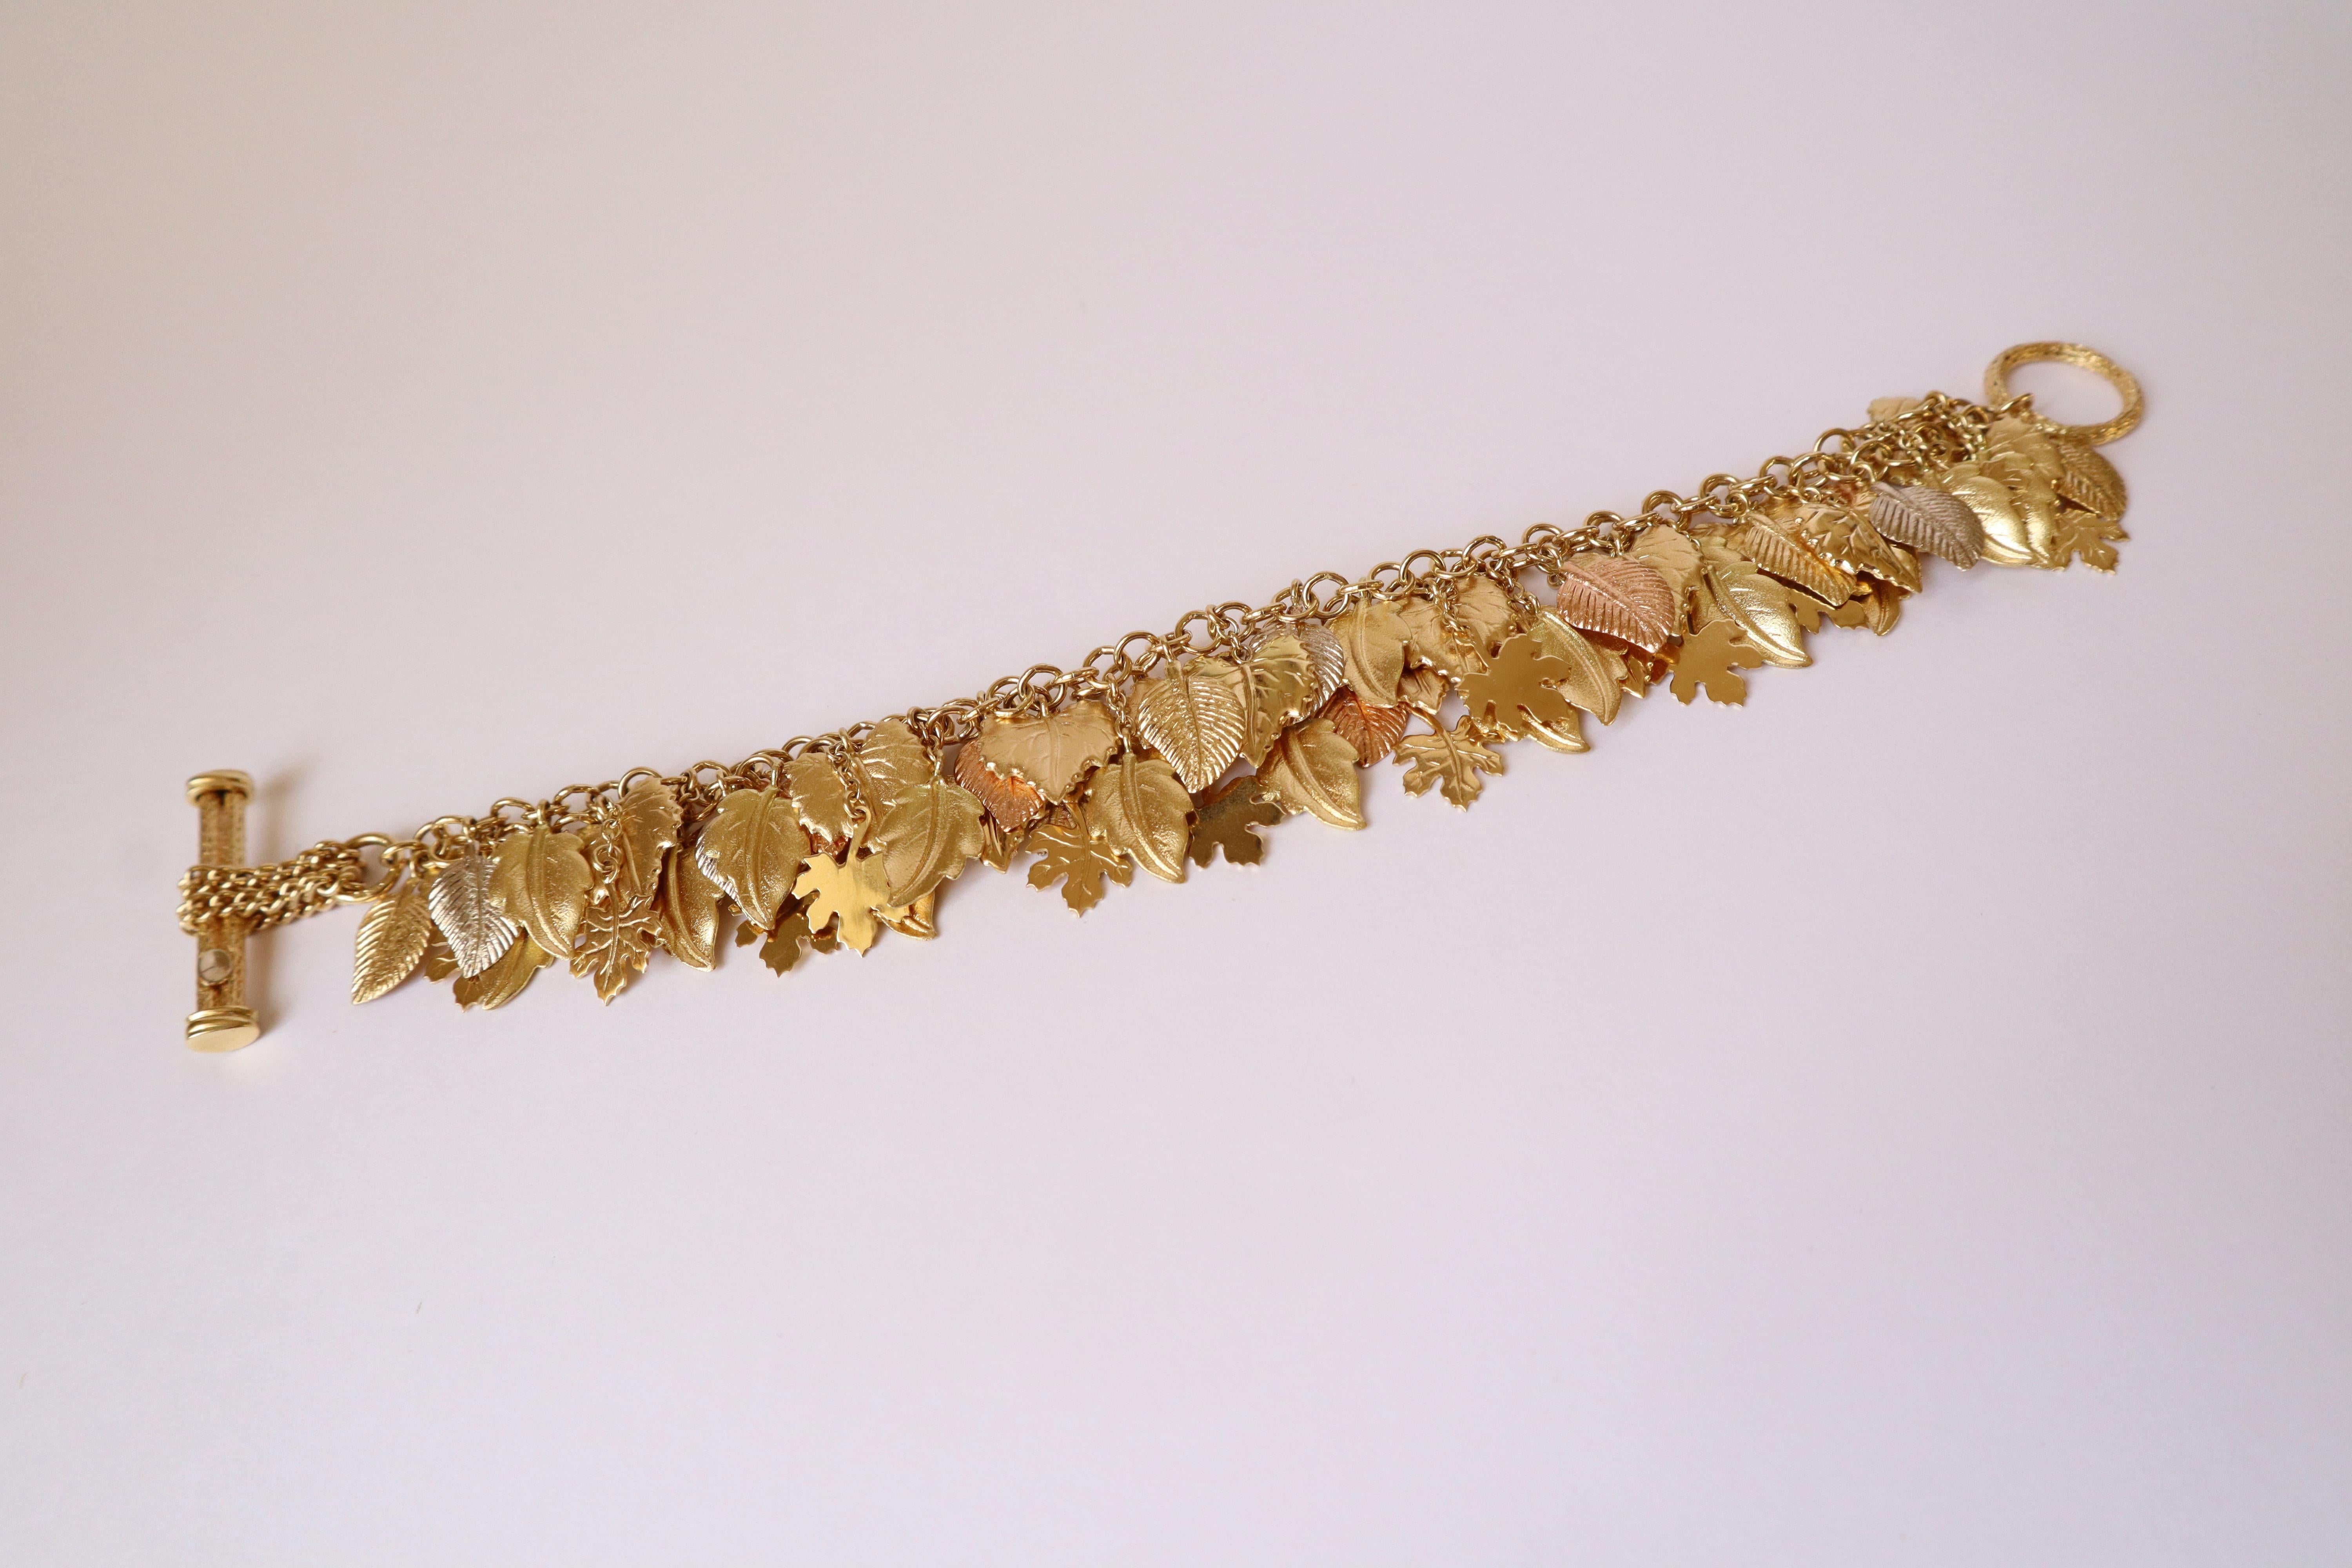 Armband Charm 3 Gold 18 Karat mit Blattmuster
Doppelkette aus Gelbgold, die verschiedene Arten von Baumblättern in verschiedenen Goldfarben (weiß, rosa und gelb) mit 18 Karat hält. Goldpunze: Eule. 
Länge: 19 cm Breite: 4 cm 
Nettogewicht: 54 g